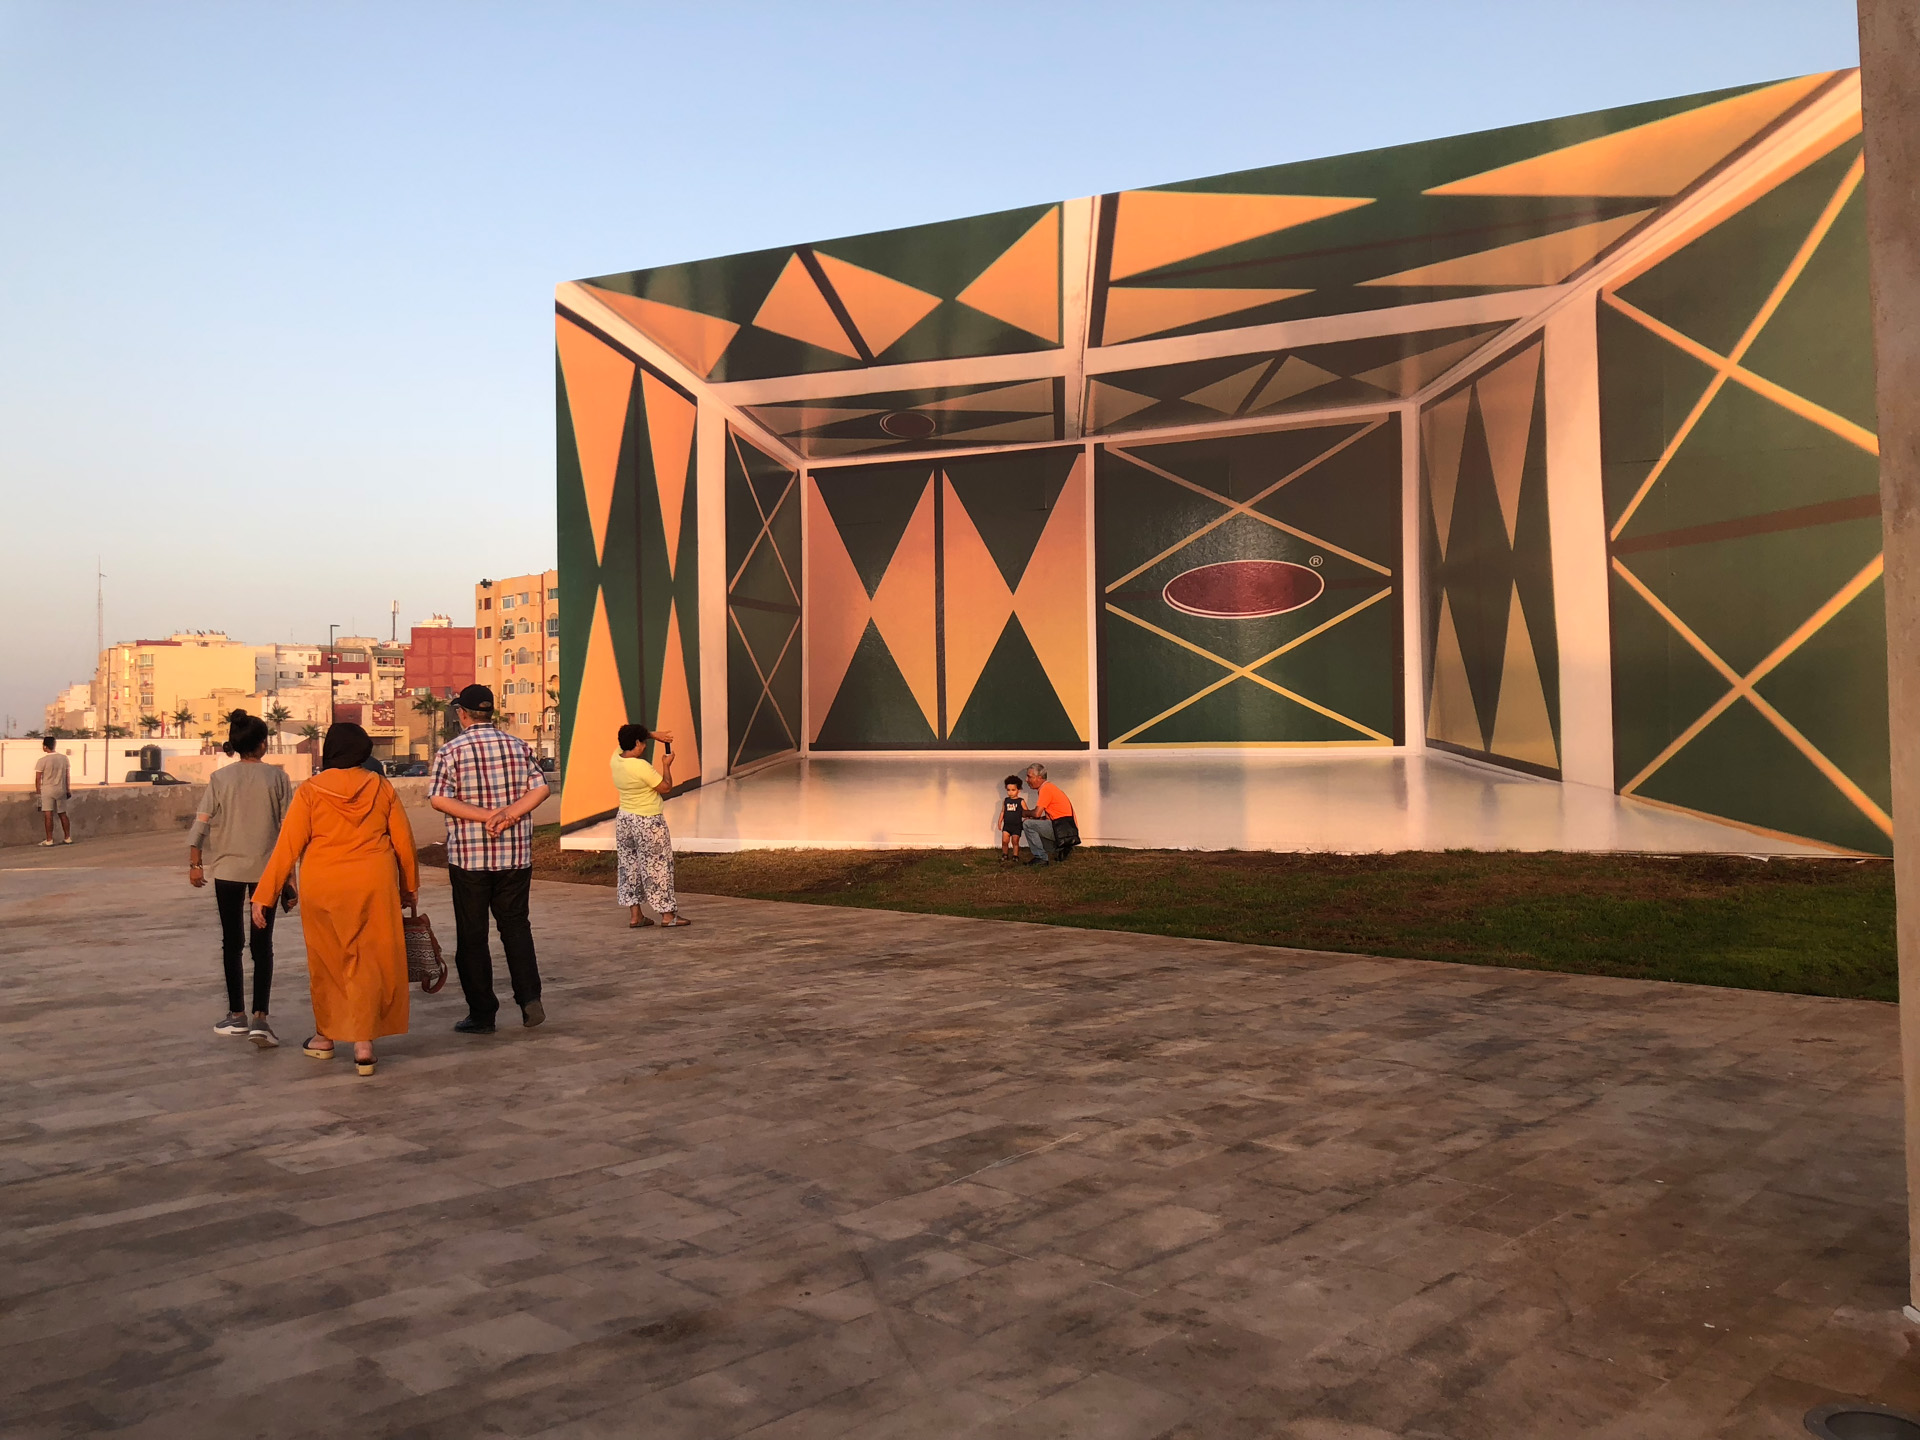 Terrain de Proximité, 2019
800 x 1500 cm
Vinil adesivado sobre painel de madeira
Rabat Biennale, 2019
